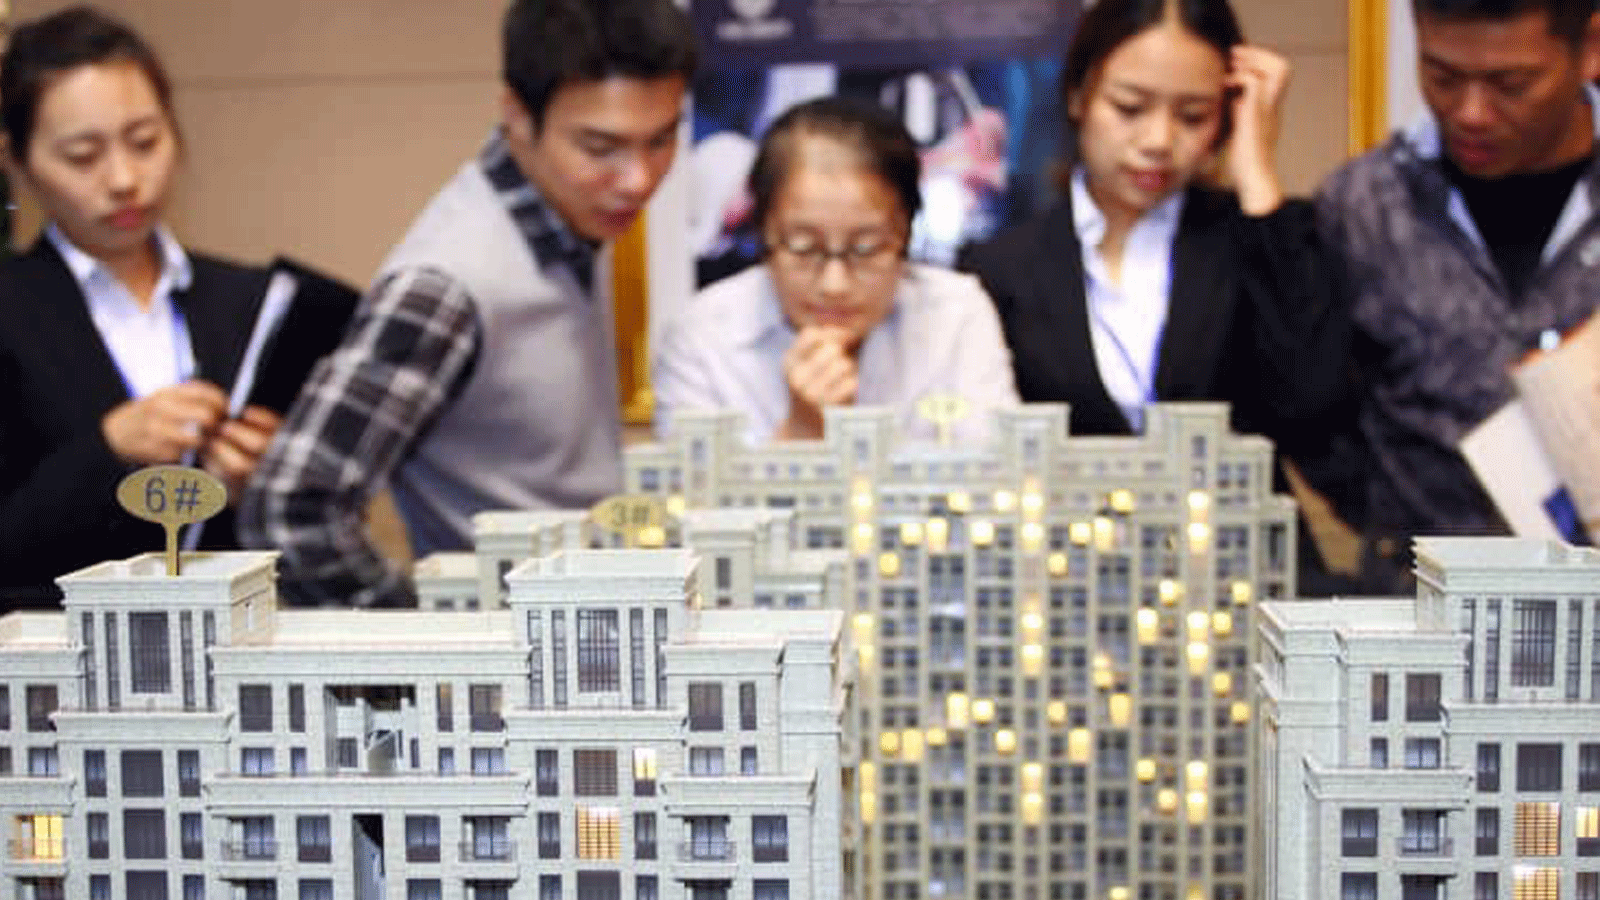 العملاء وأصحاب العقارات ينظرون إلى نماذج البناء في معرض في جياشان في شرق الصين.